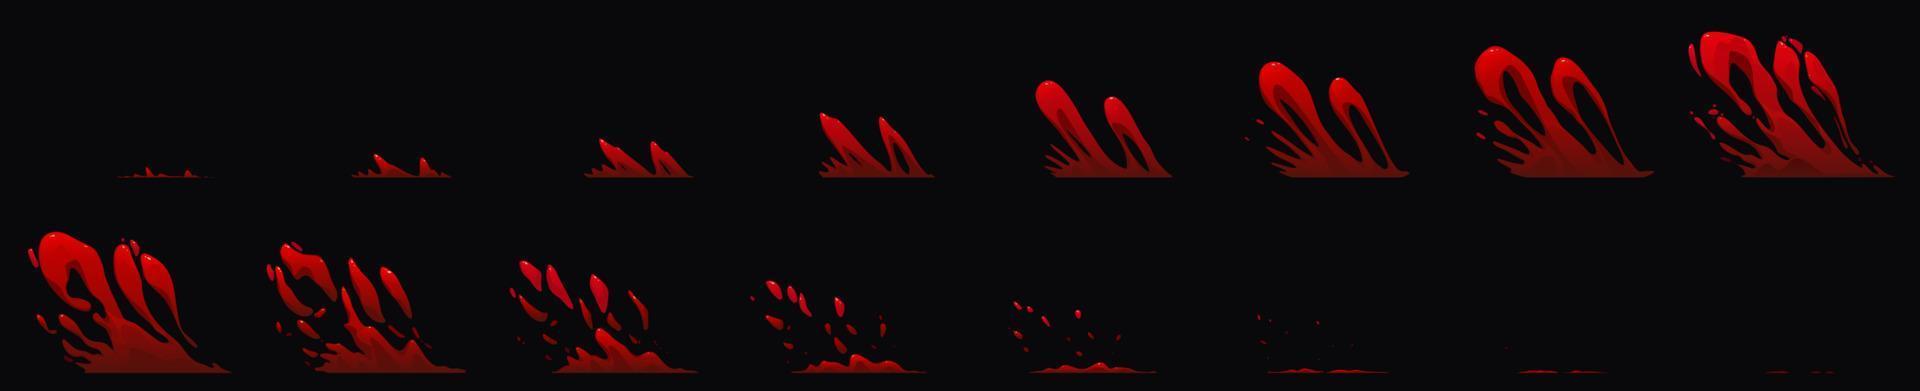 bloed plons sprite vel voor spel of animatie vector